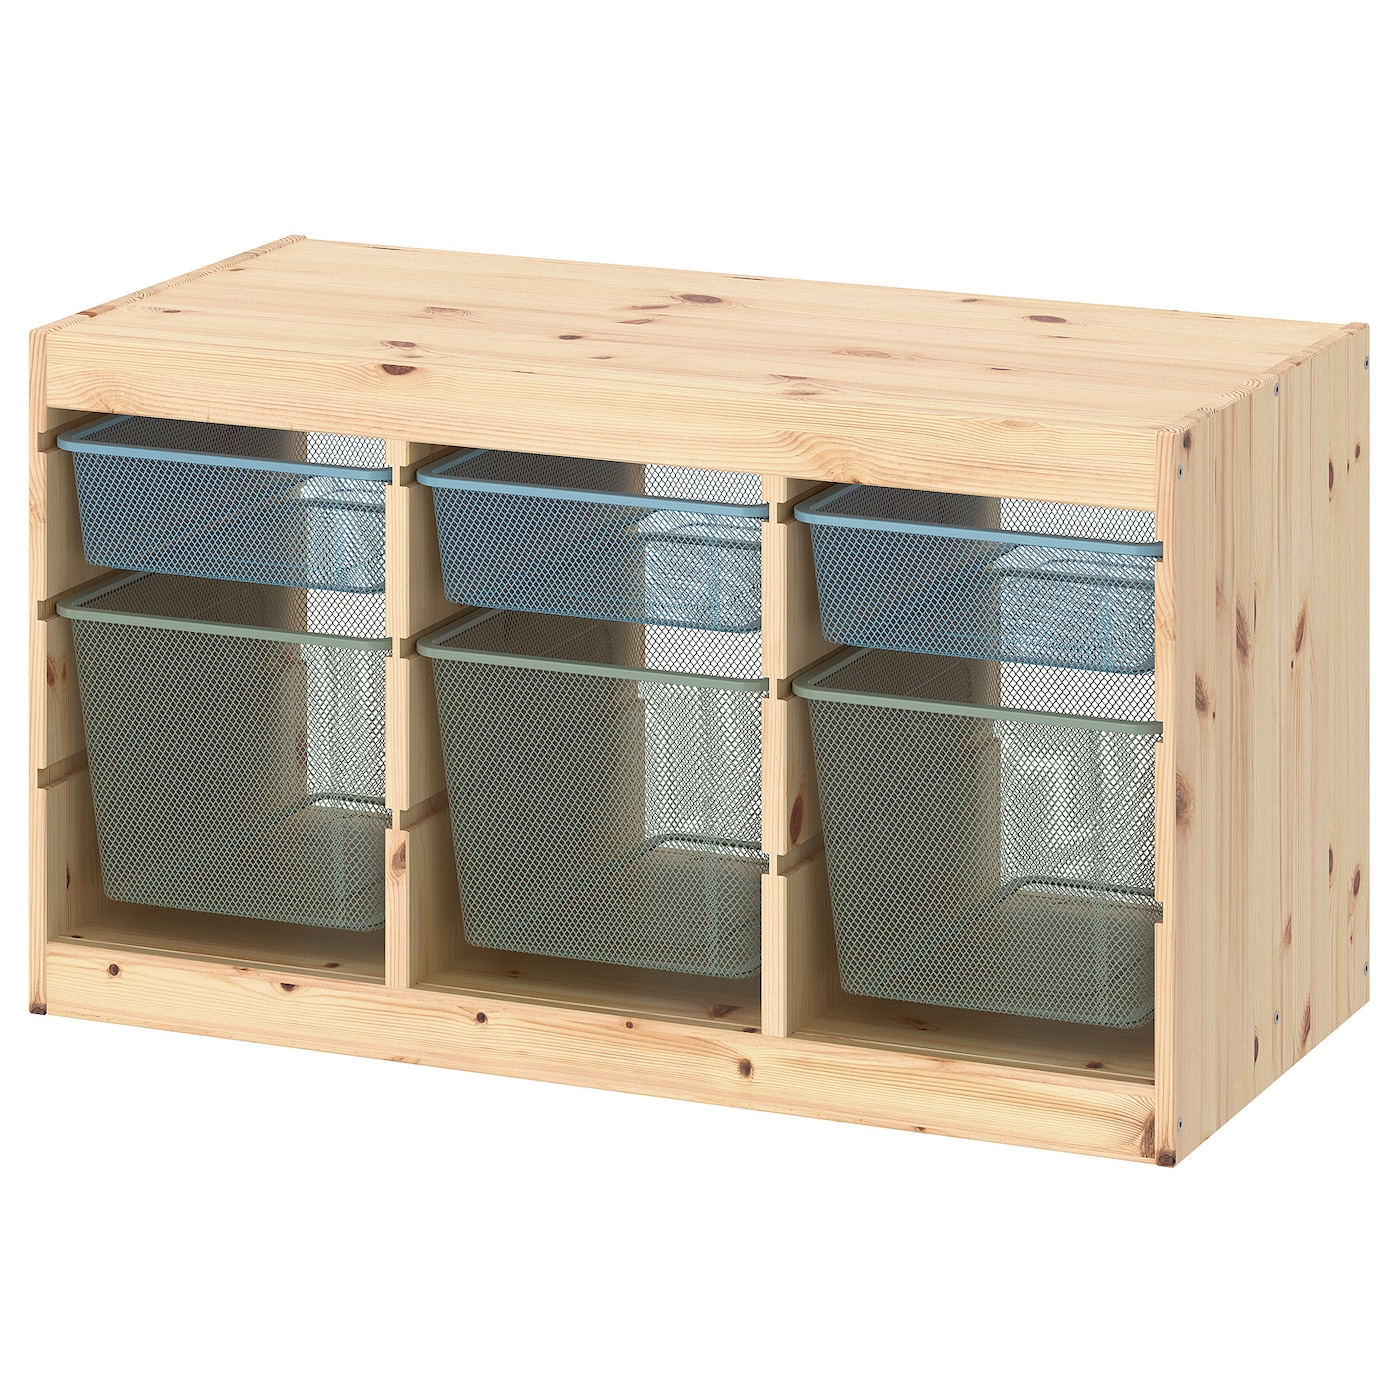 Шкаф для хранения - TROFAST IKEA/ ТРУФАСТ ИКЕА,  93x44x52 см, бежевый